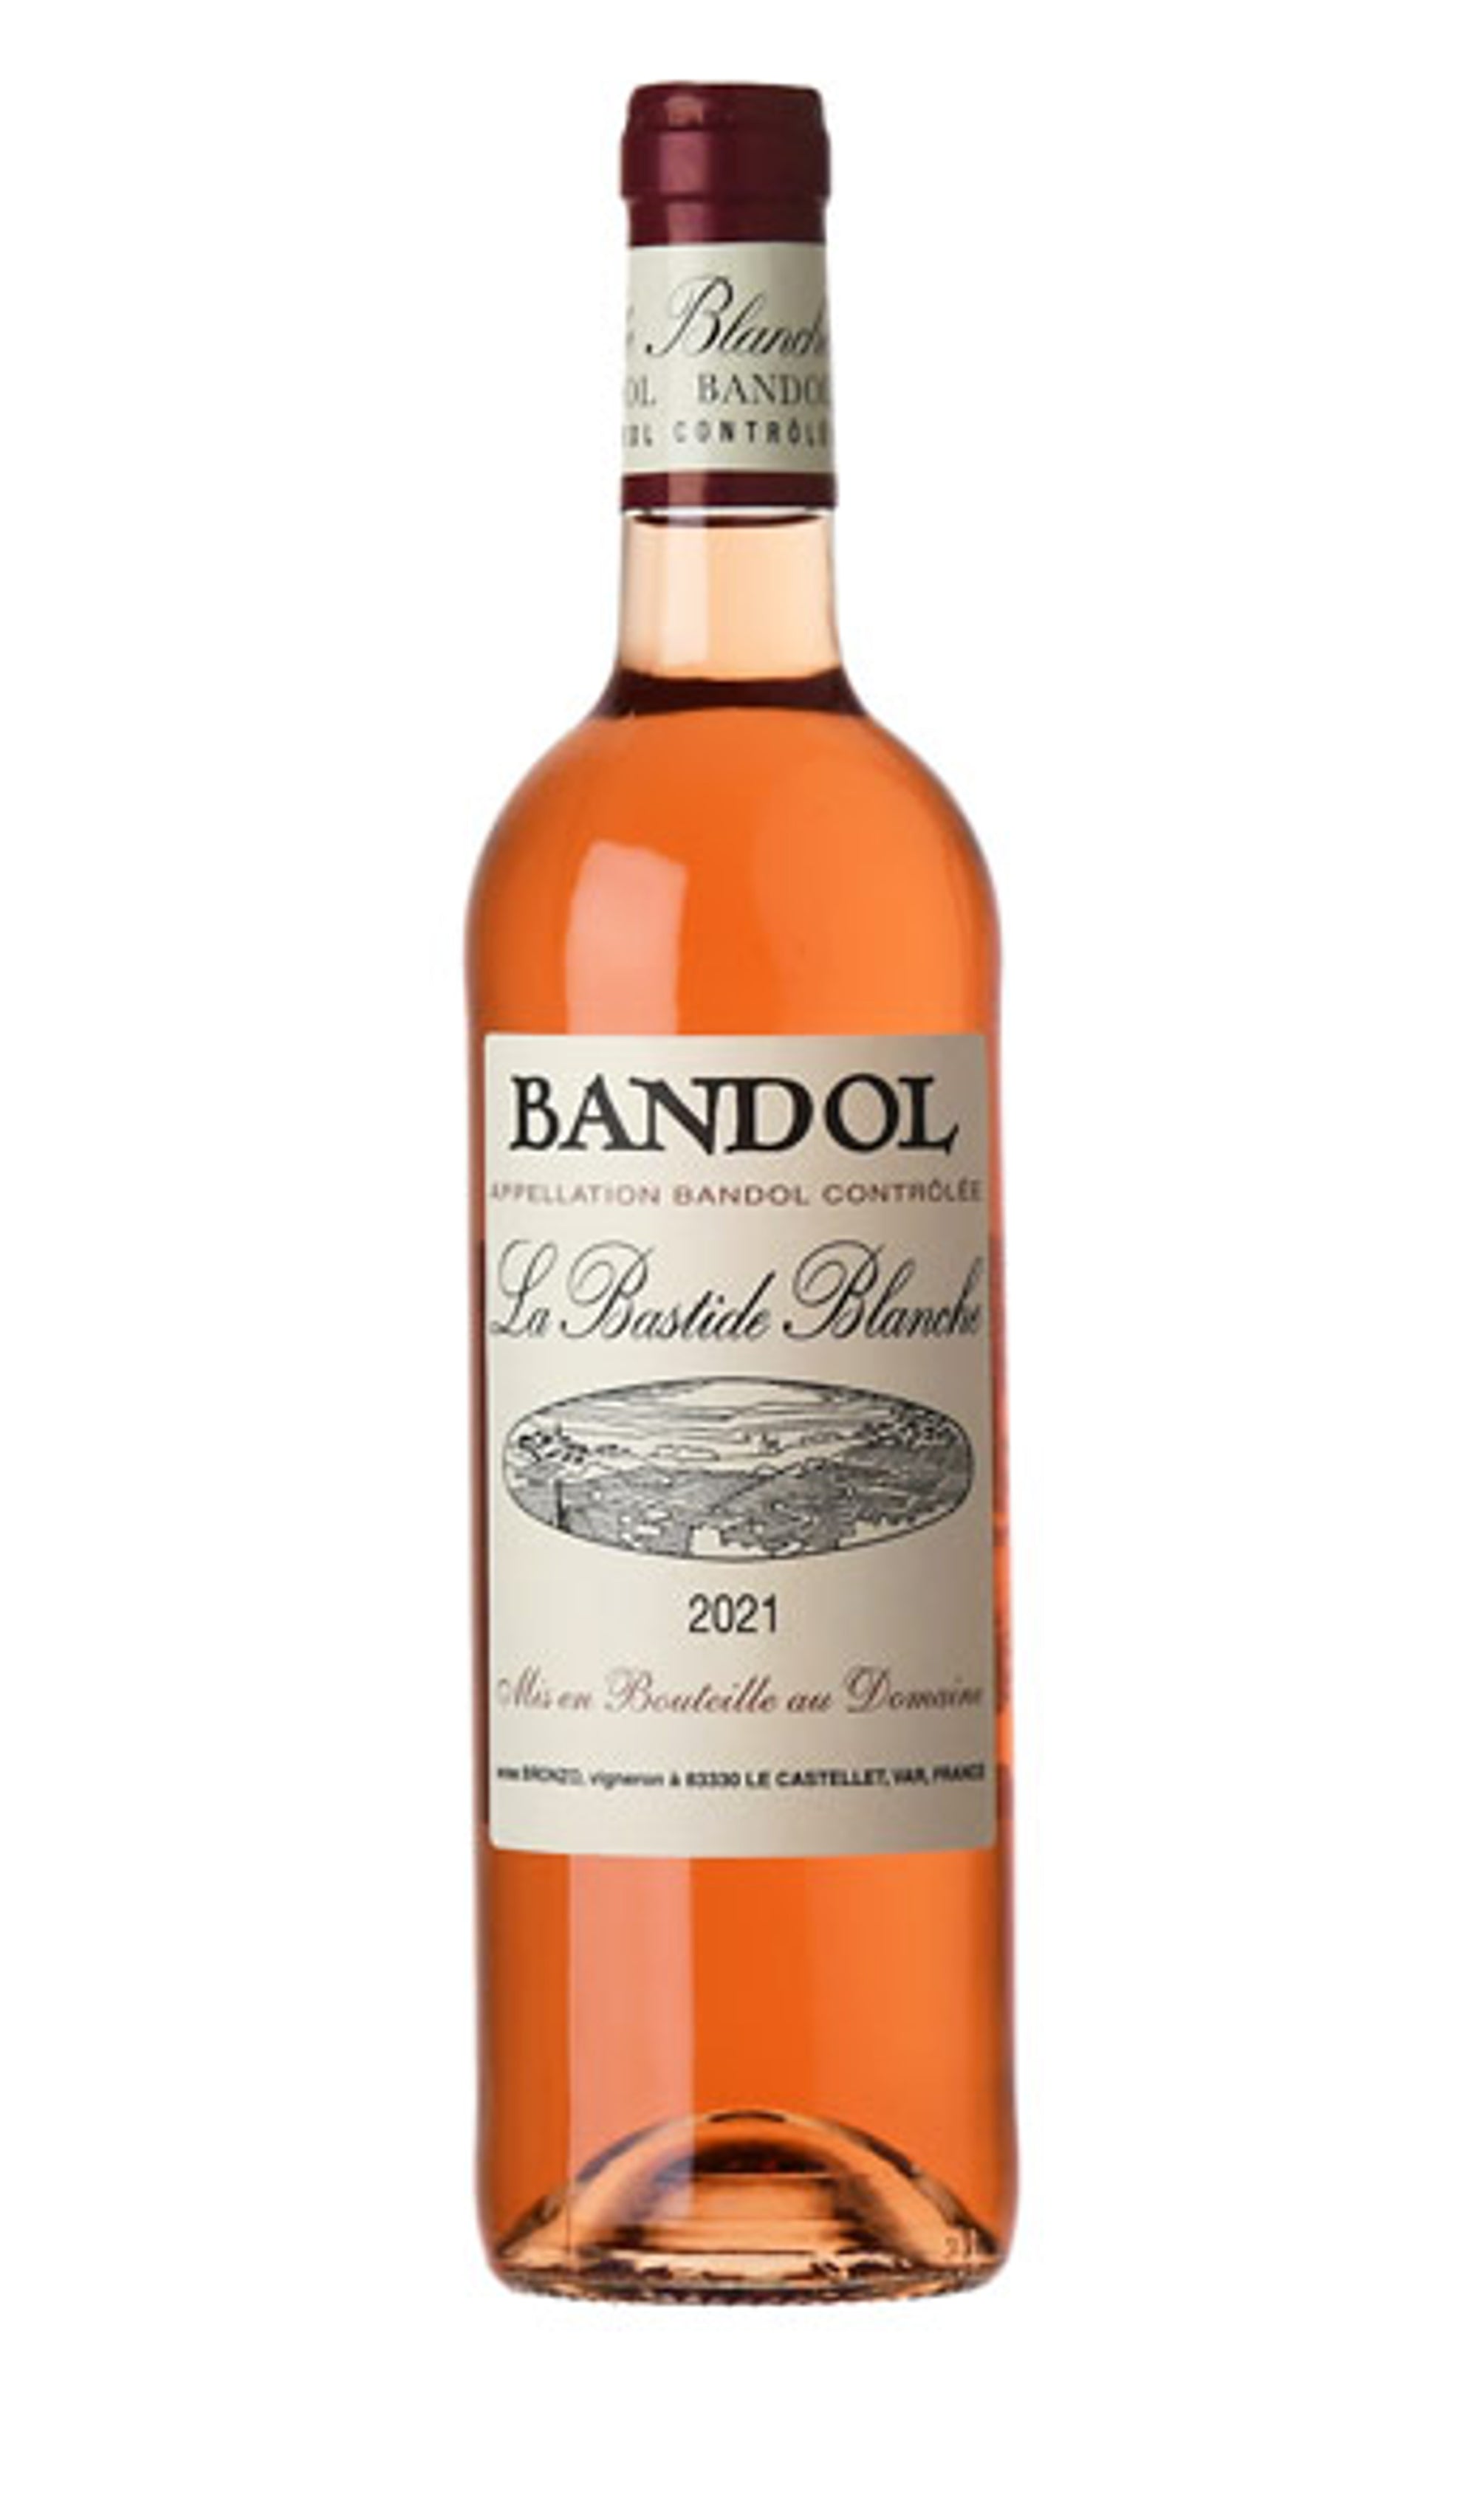 Domaine La Bastide Blanche - Bandol Rose 2021 (750ml)